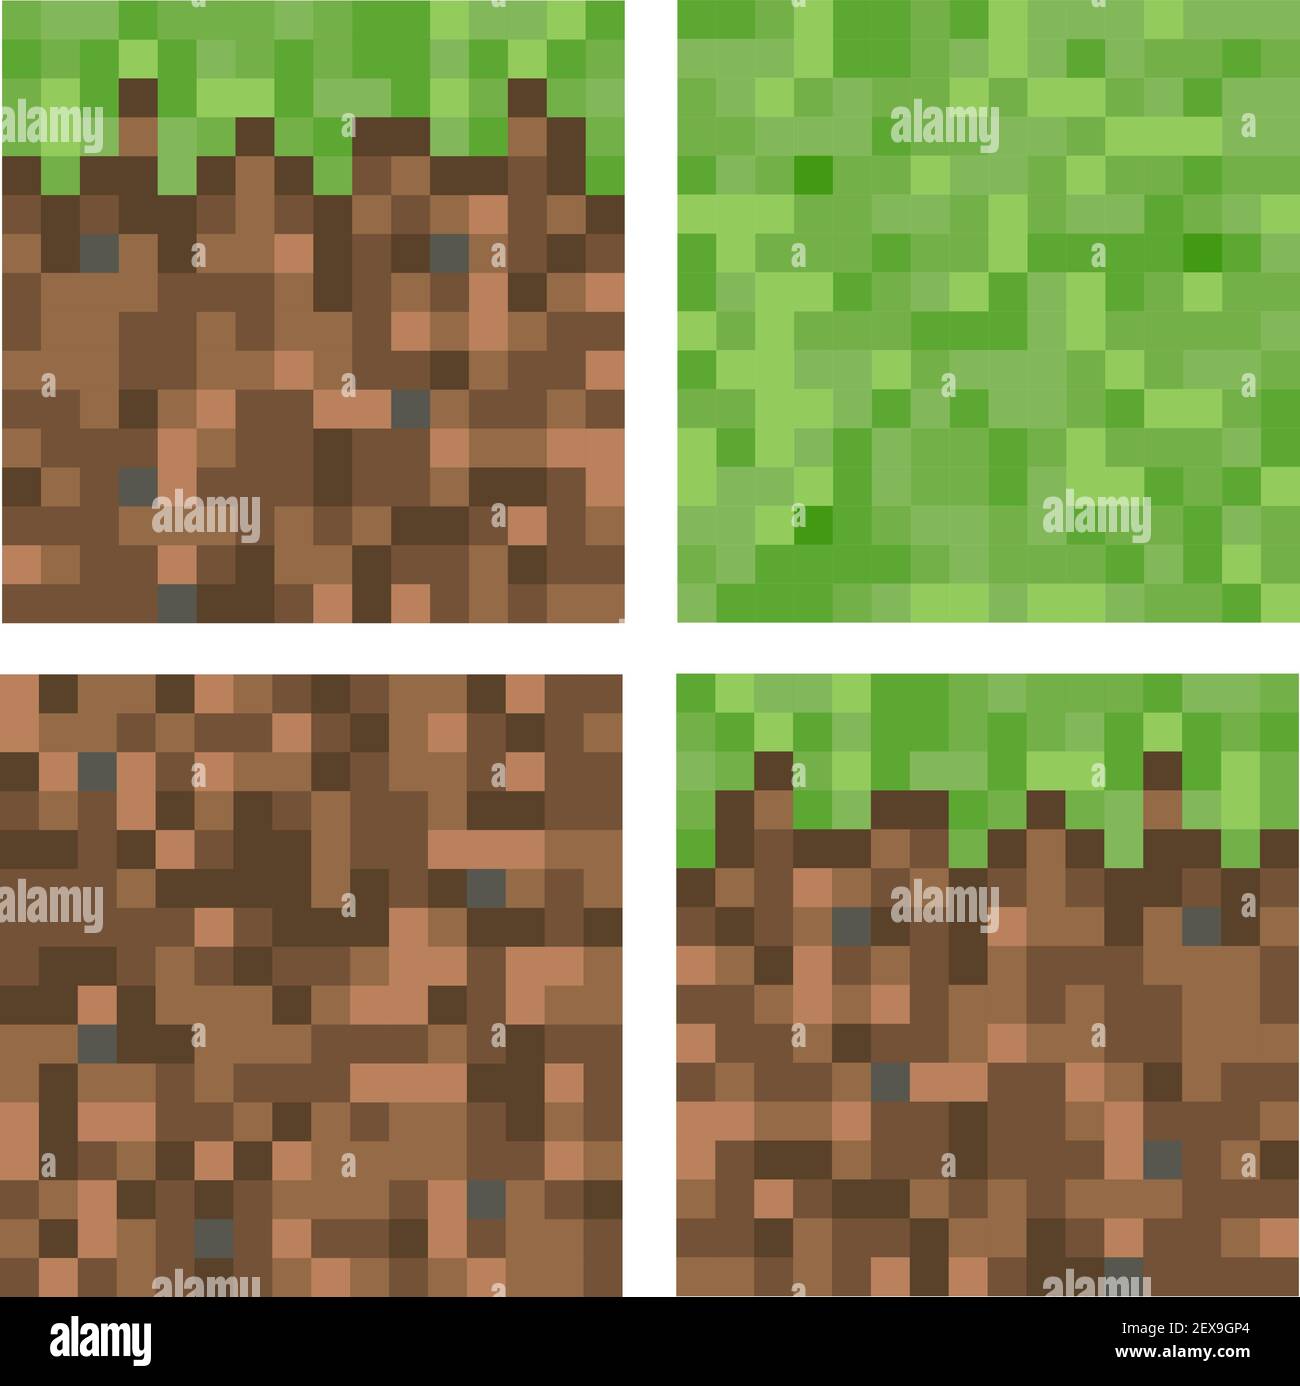 Sfondo del blocco terra stile minecraft pixel. Concetto di terreno di gioco pixelated orizzontale senza cuciture sfondo. Vista superiore, laterale, inferiore. Isolato Illustrazione Vettoriale